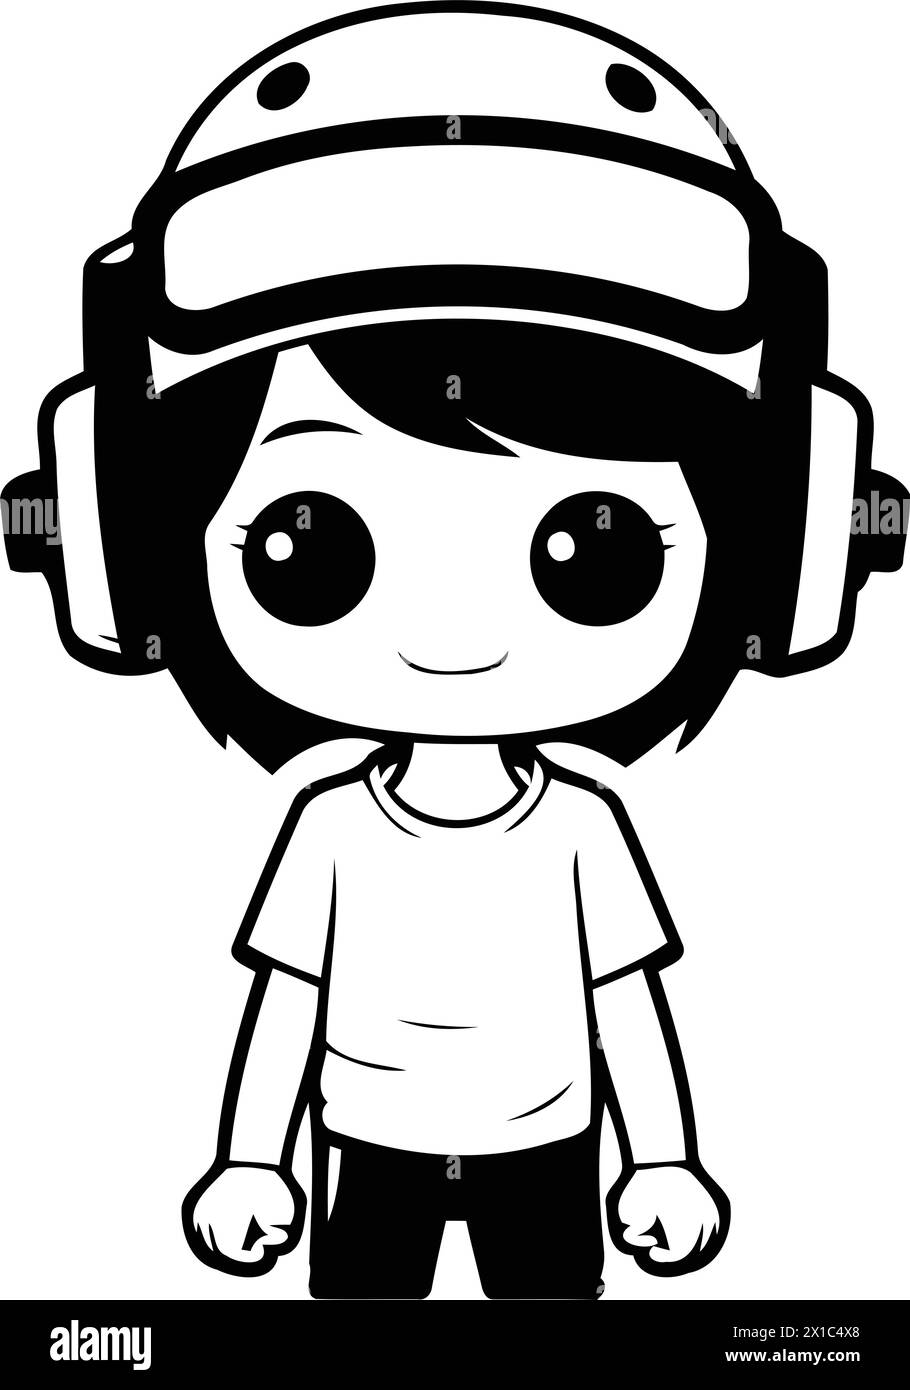 Cute boy wearing astronaut helmet and headphones. Vector cartoon illustration. Stock Vector